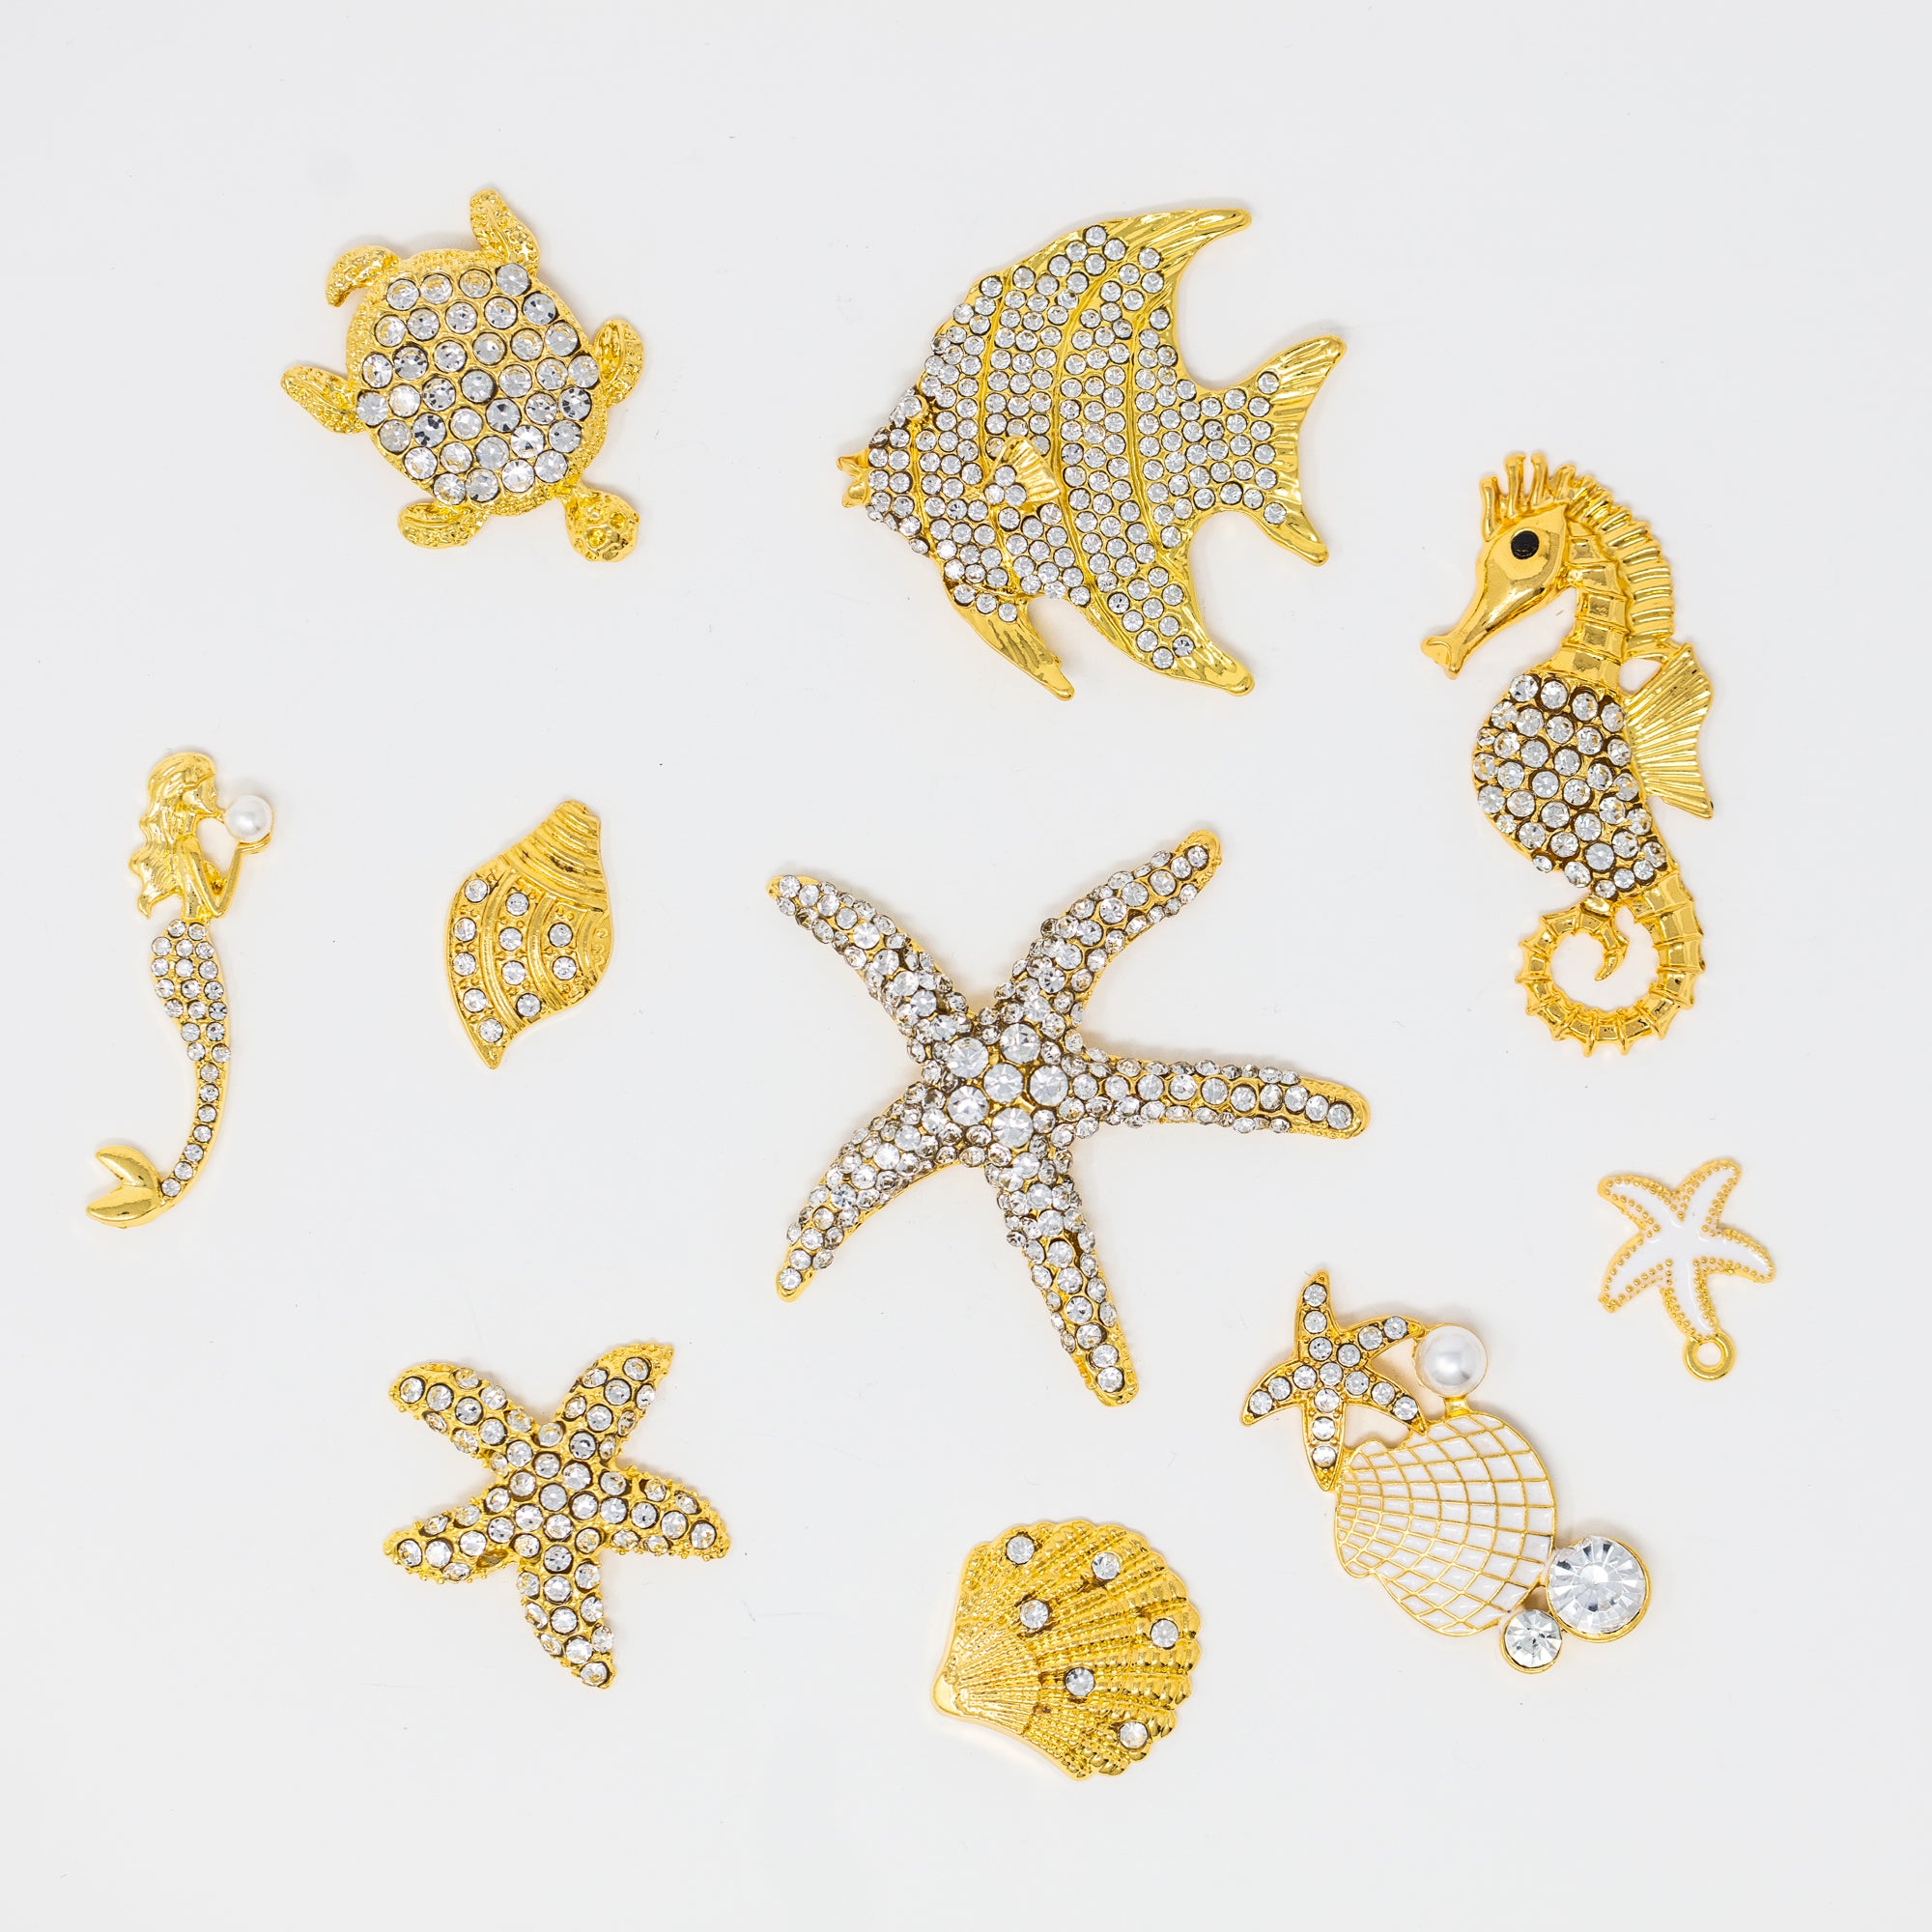 Coastal Rhinestone Embellishments Gold metal finish. Beach crafting embellishments Rhinestone Starfish Sea horse mermaid seashells turtles